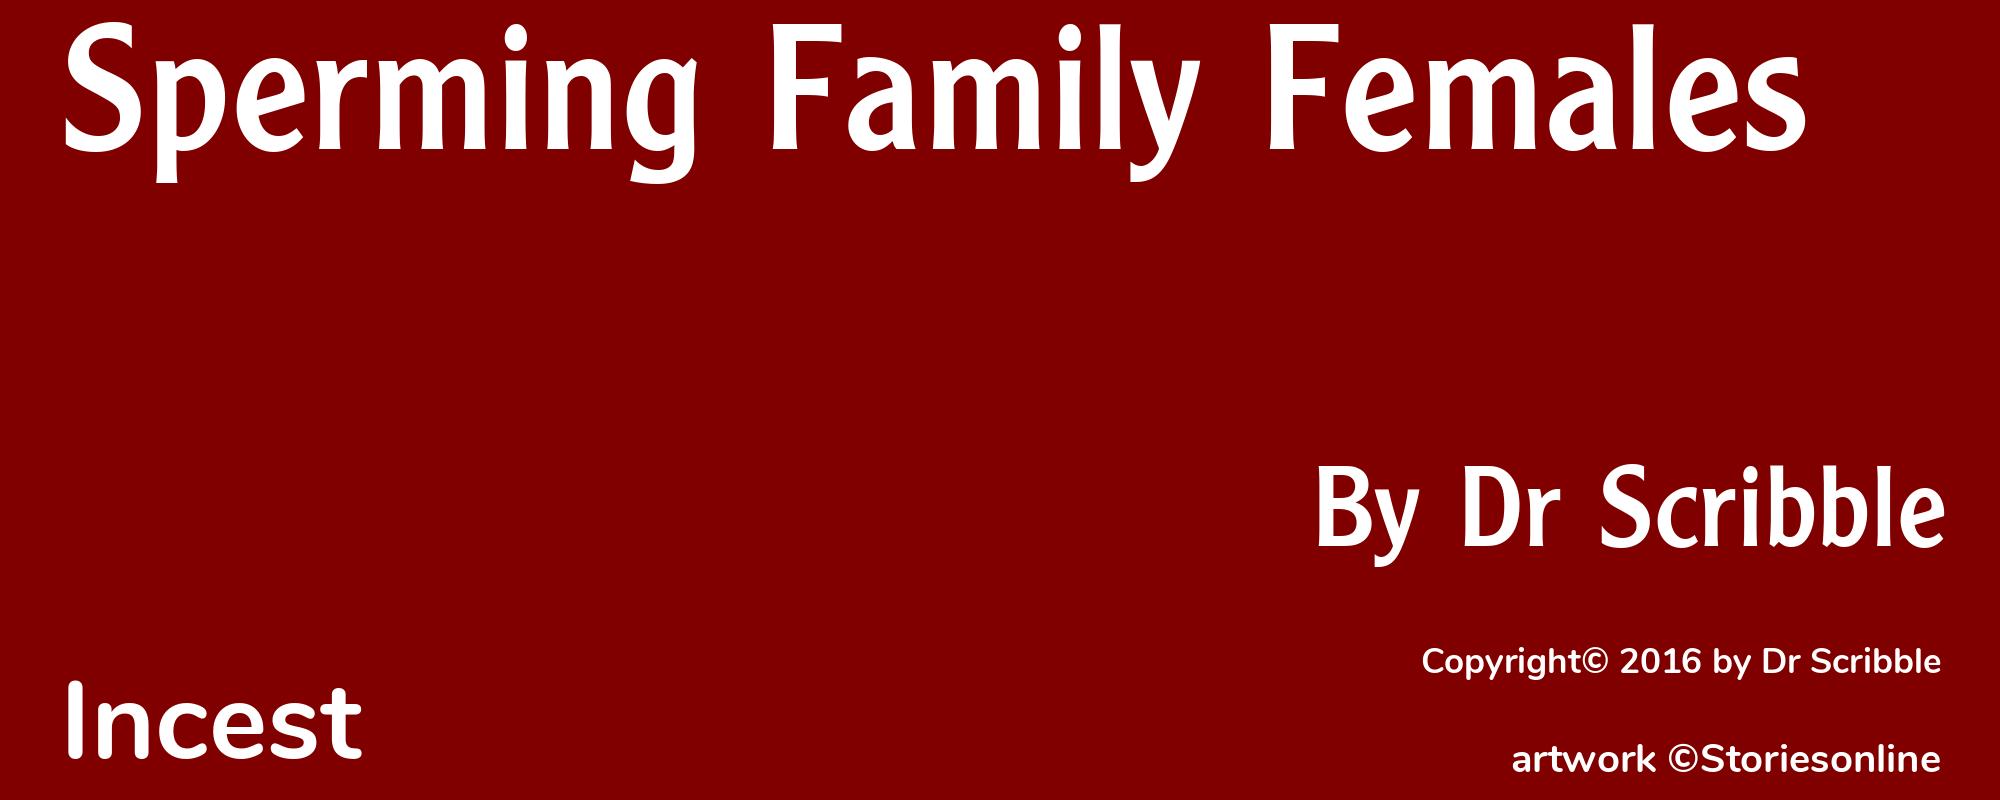 Sperming Family Females - Cover